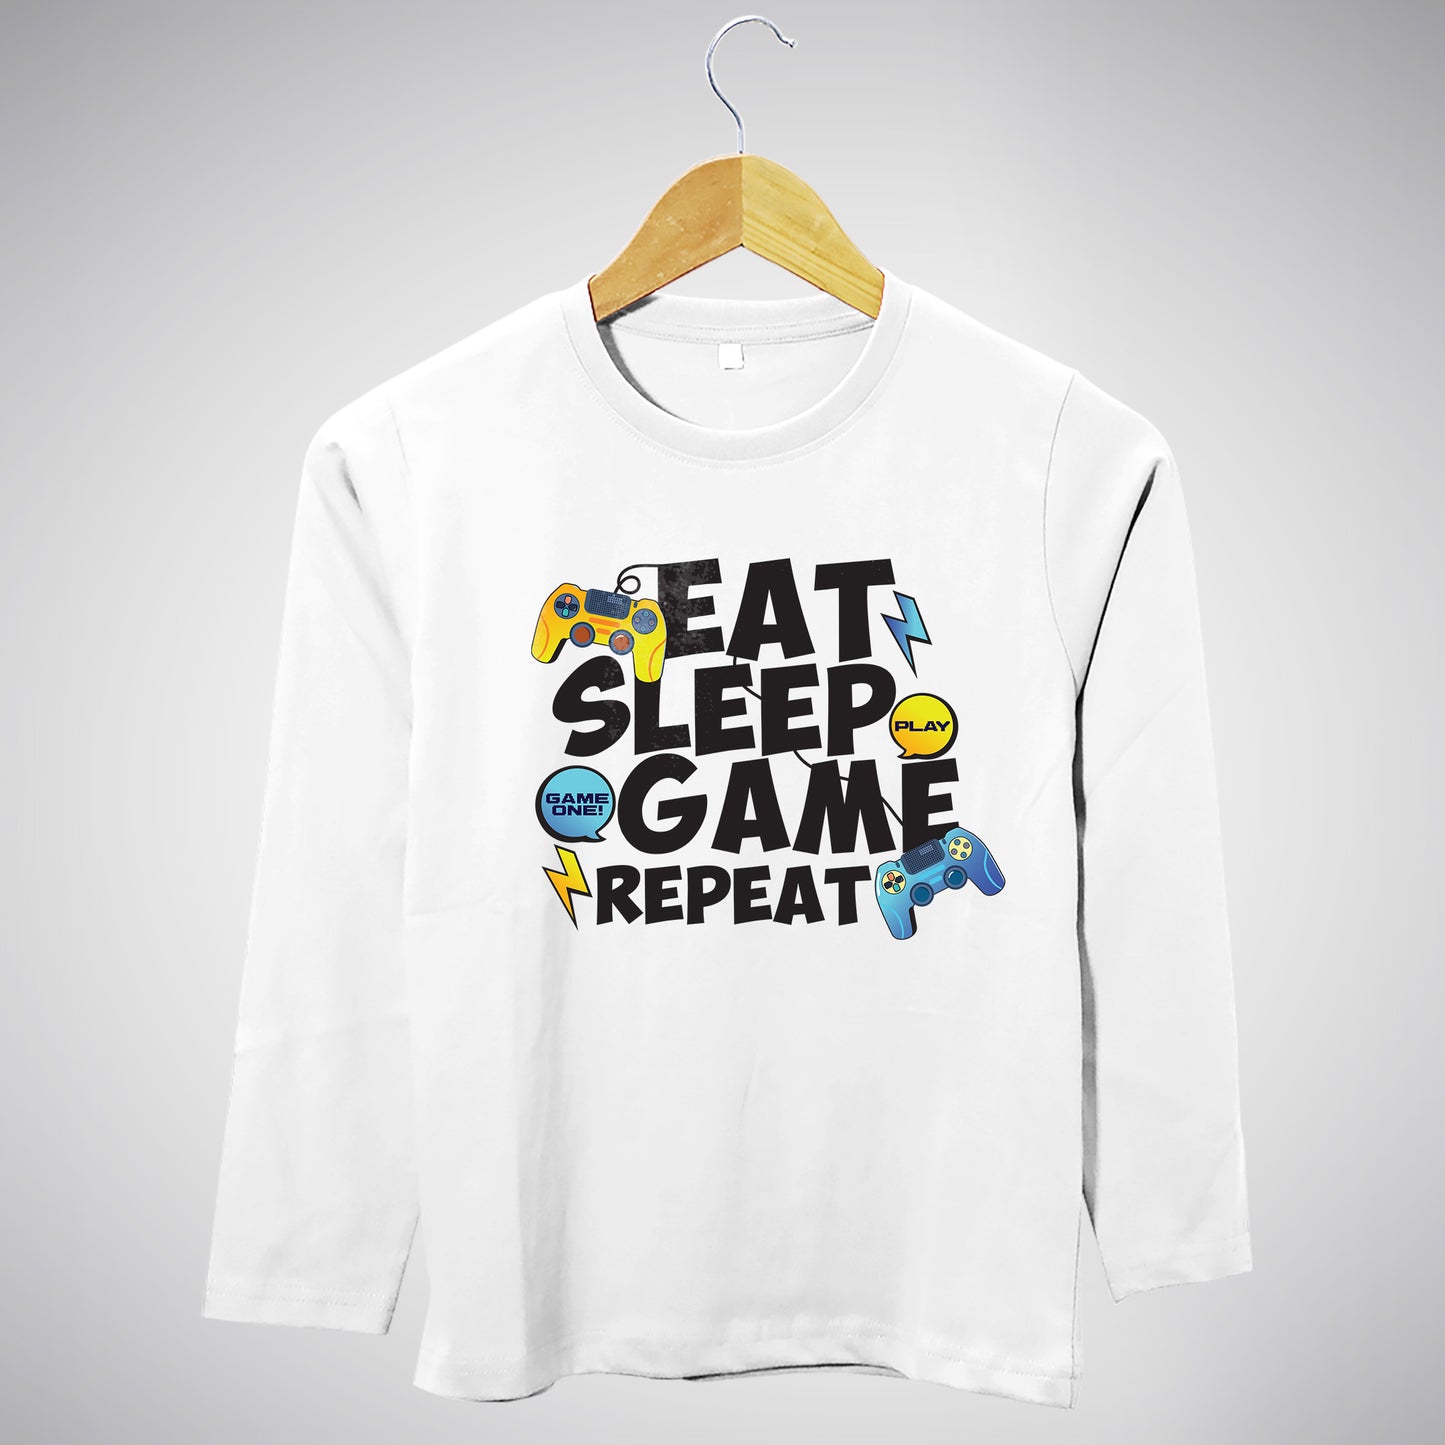 Eat. Sleep. Game. Repeat. - Full Sleeves